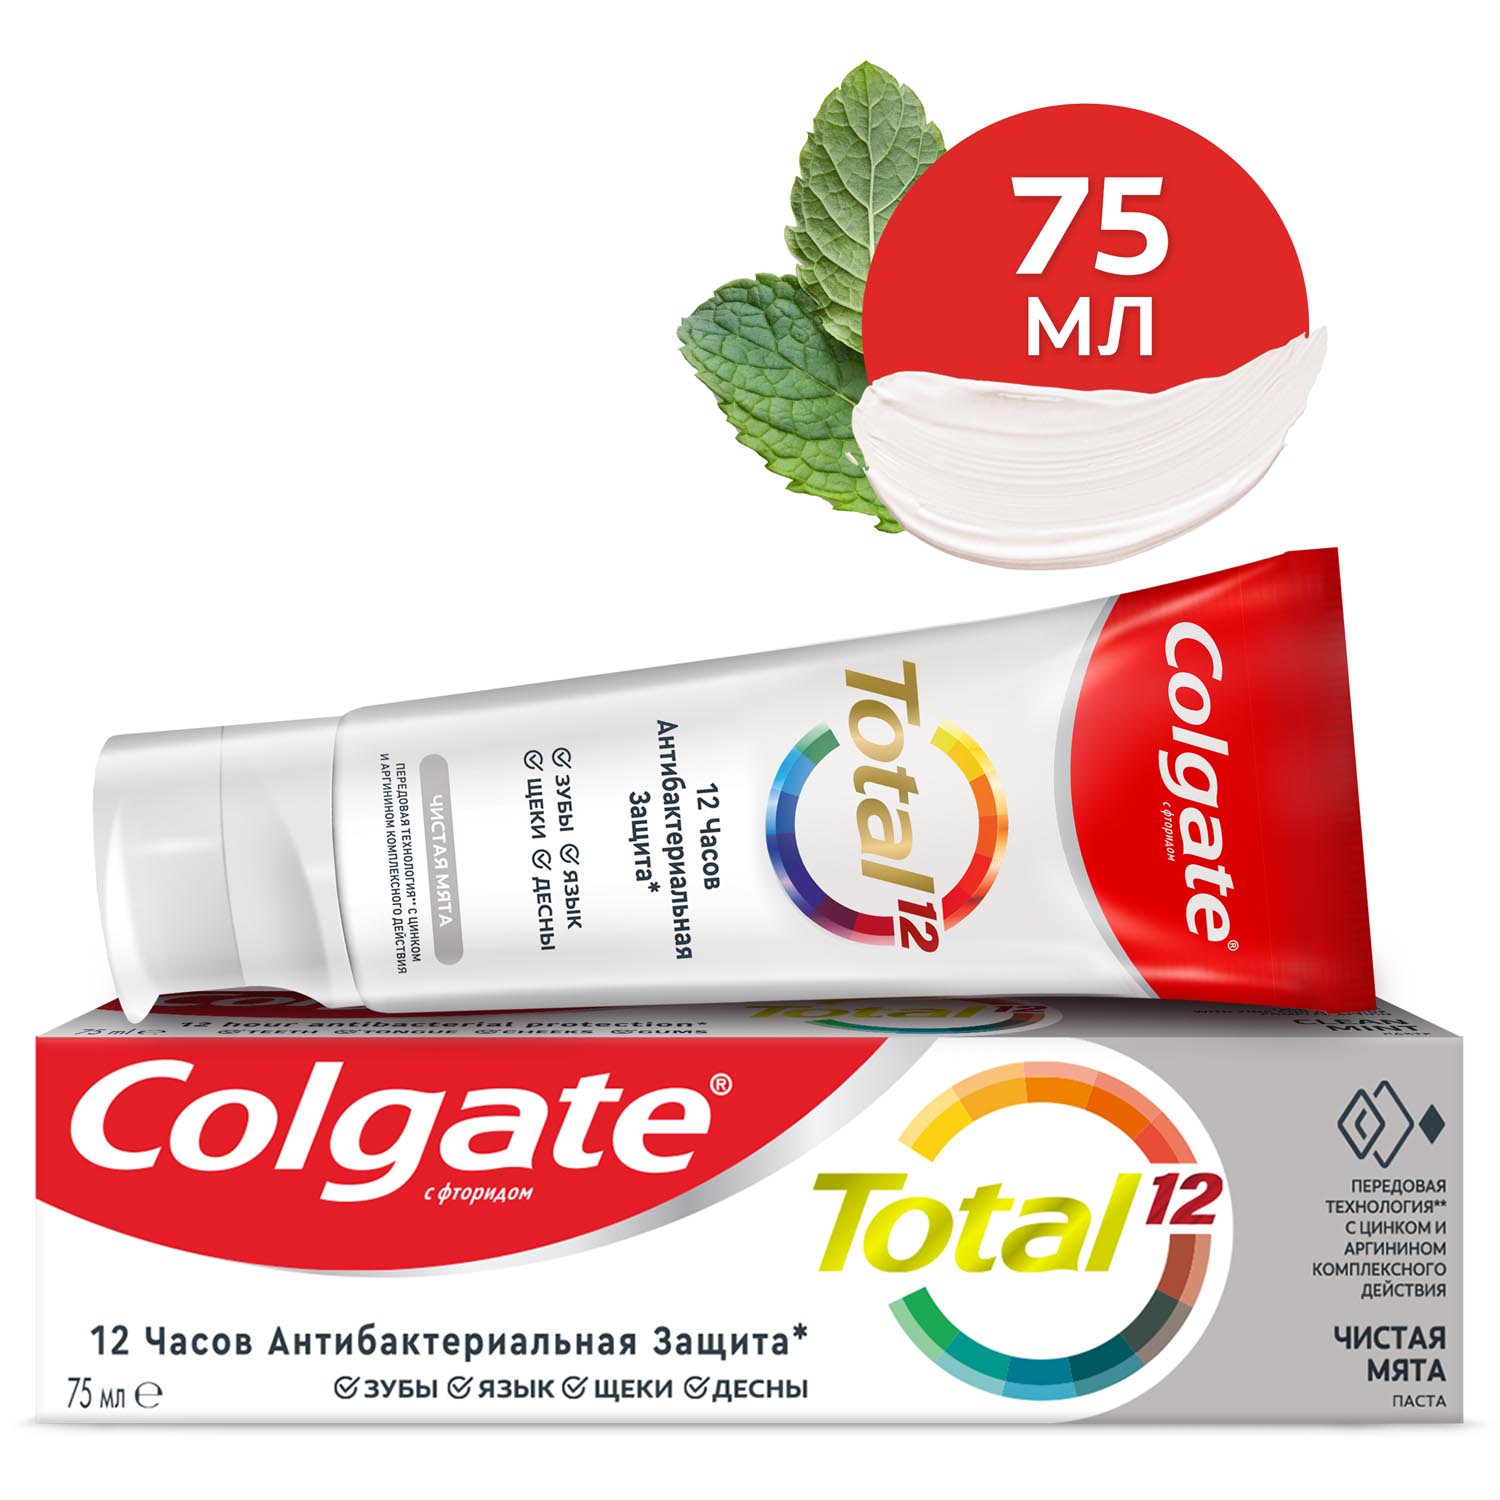 Зубная паста Colgate Total 12 Чистая мята с цинком и аргинином для комплексной антибактериальной защиты всей полости рта в течение 12 часов, 75 мл ирригатор для полости рта kitfort